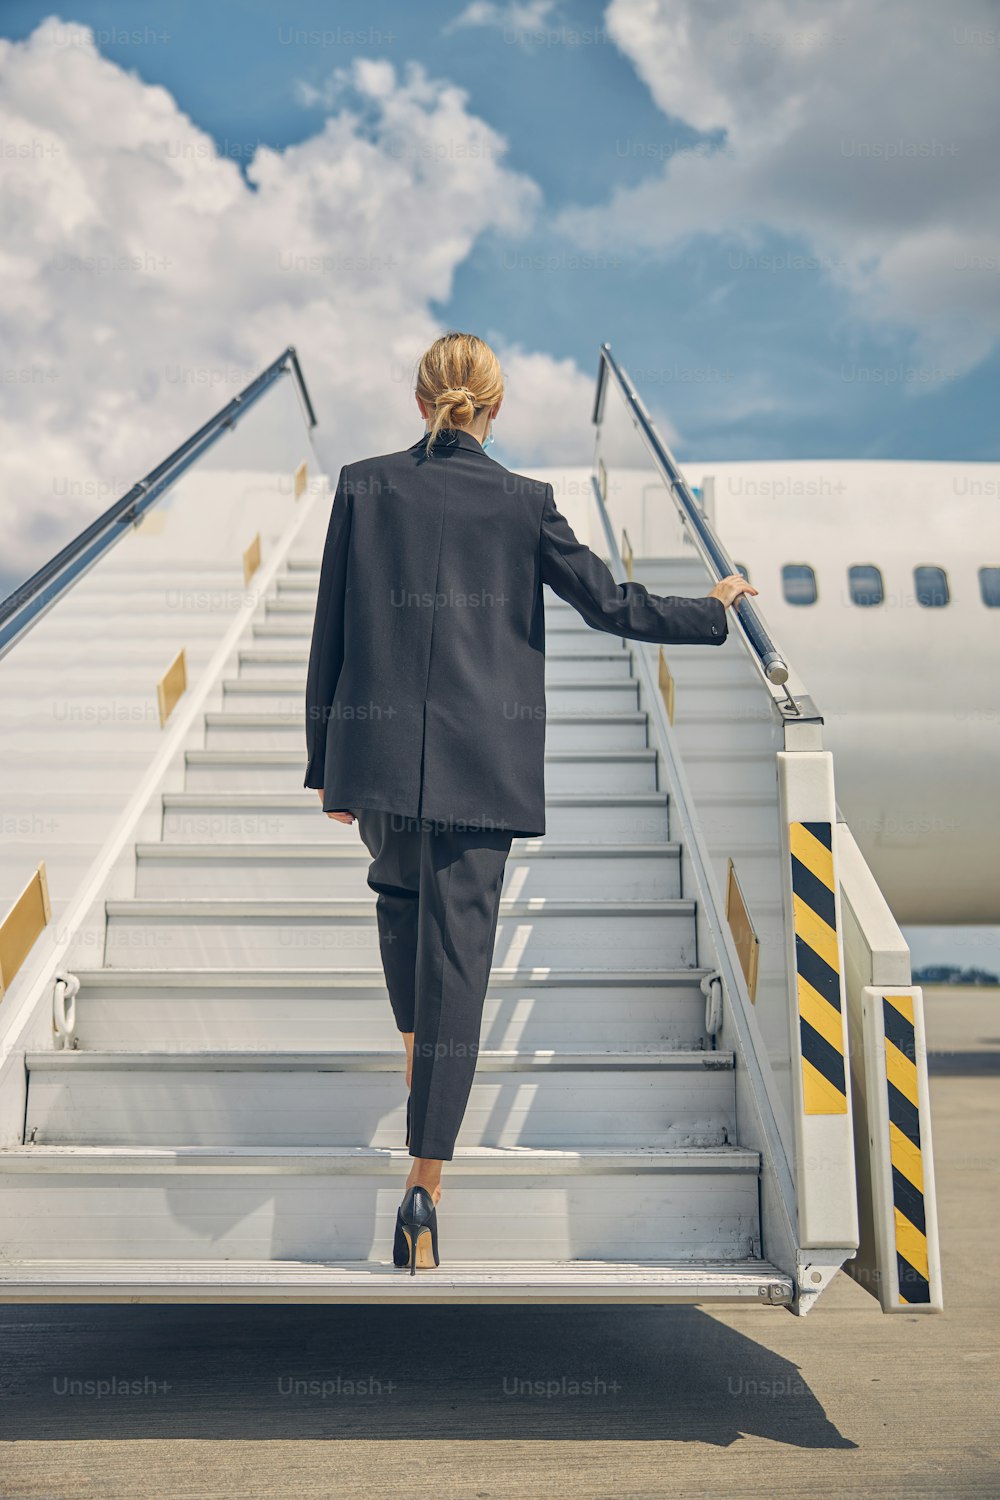 Rückansicht einer schlanken blonden Dame im Hosenanzug, die die Flugzeugtreppe hinaufsteigt